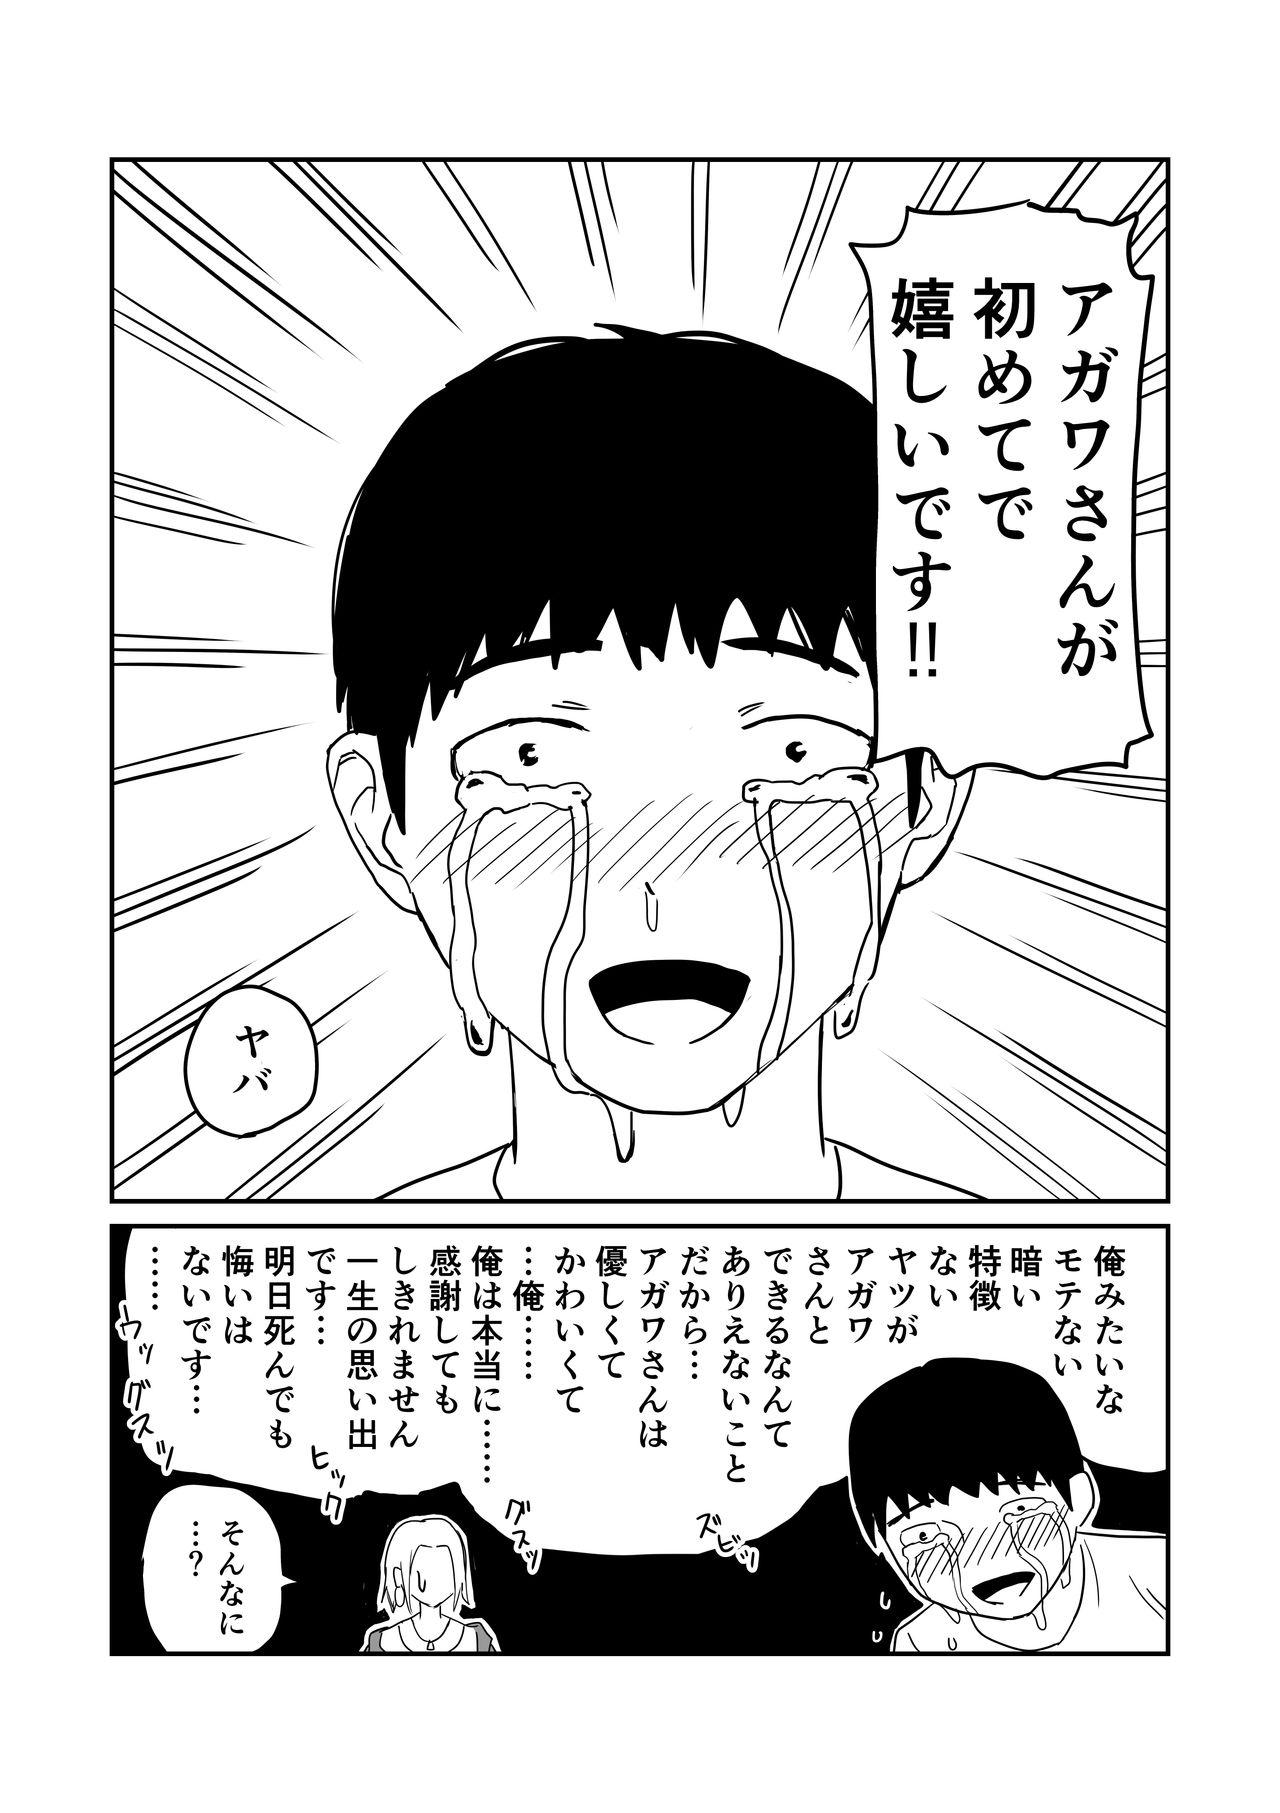 女子高生のエロ漫画 55